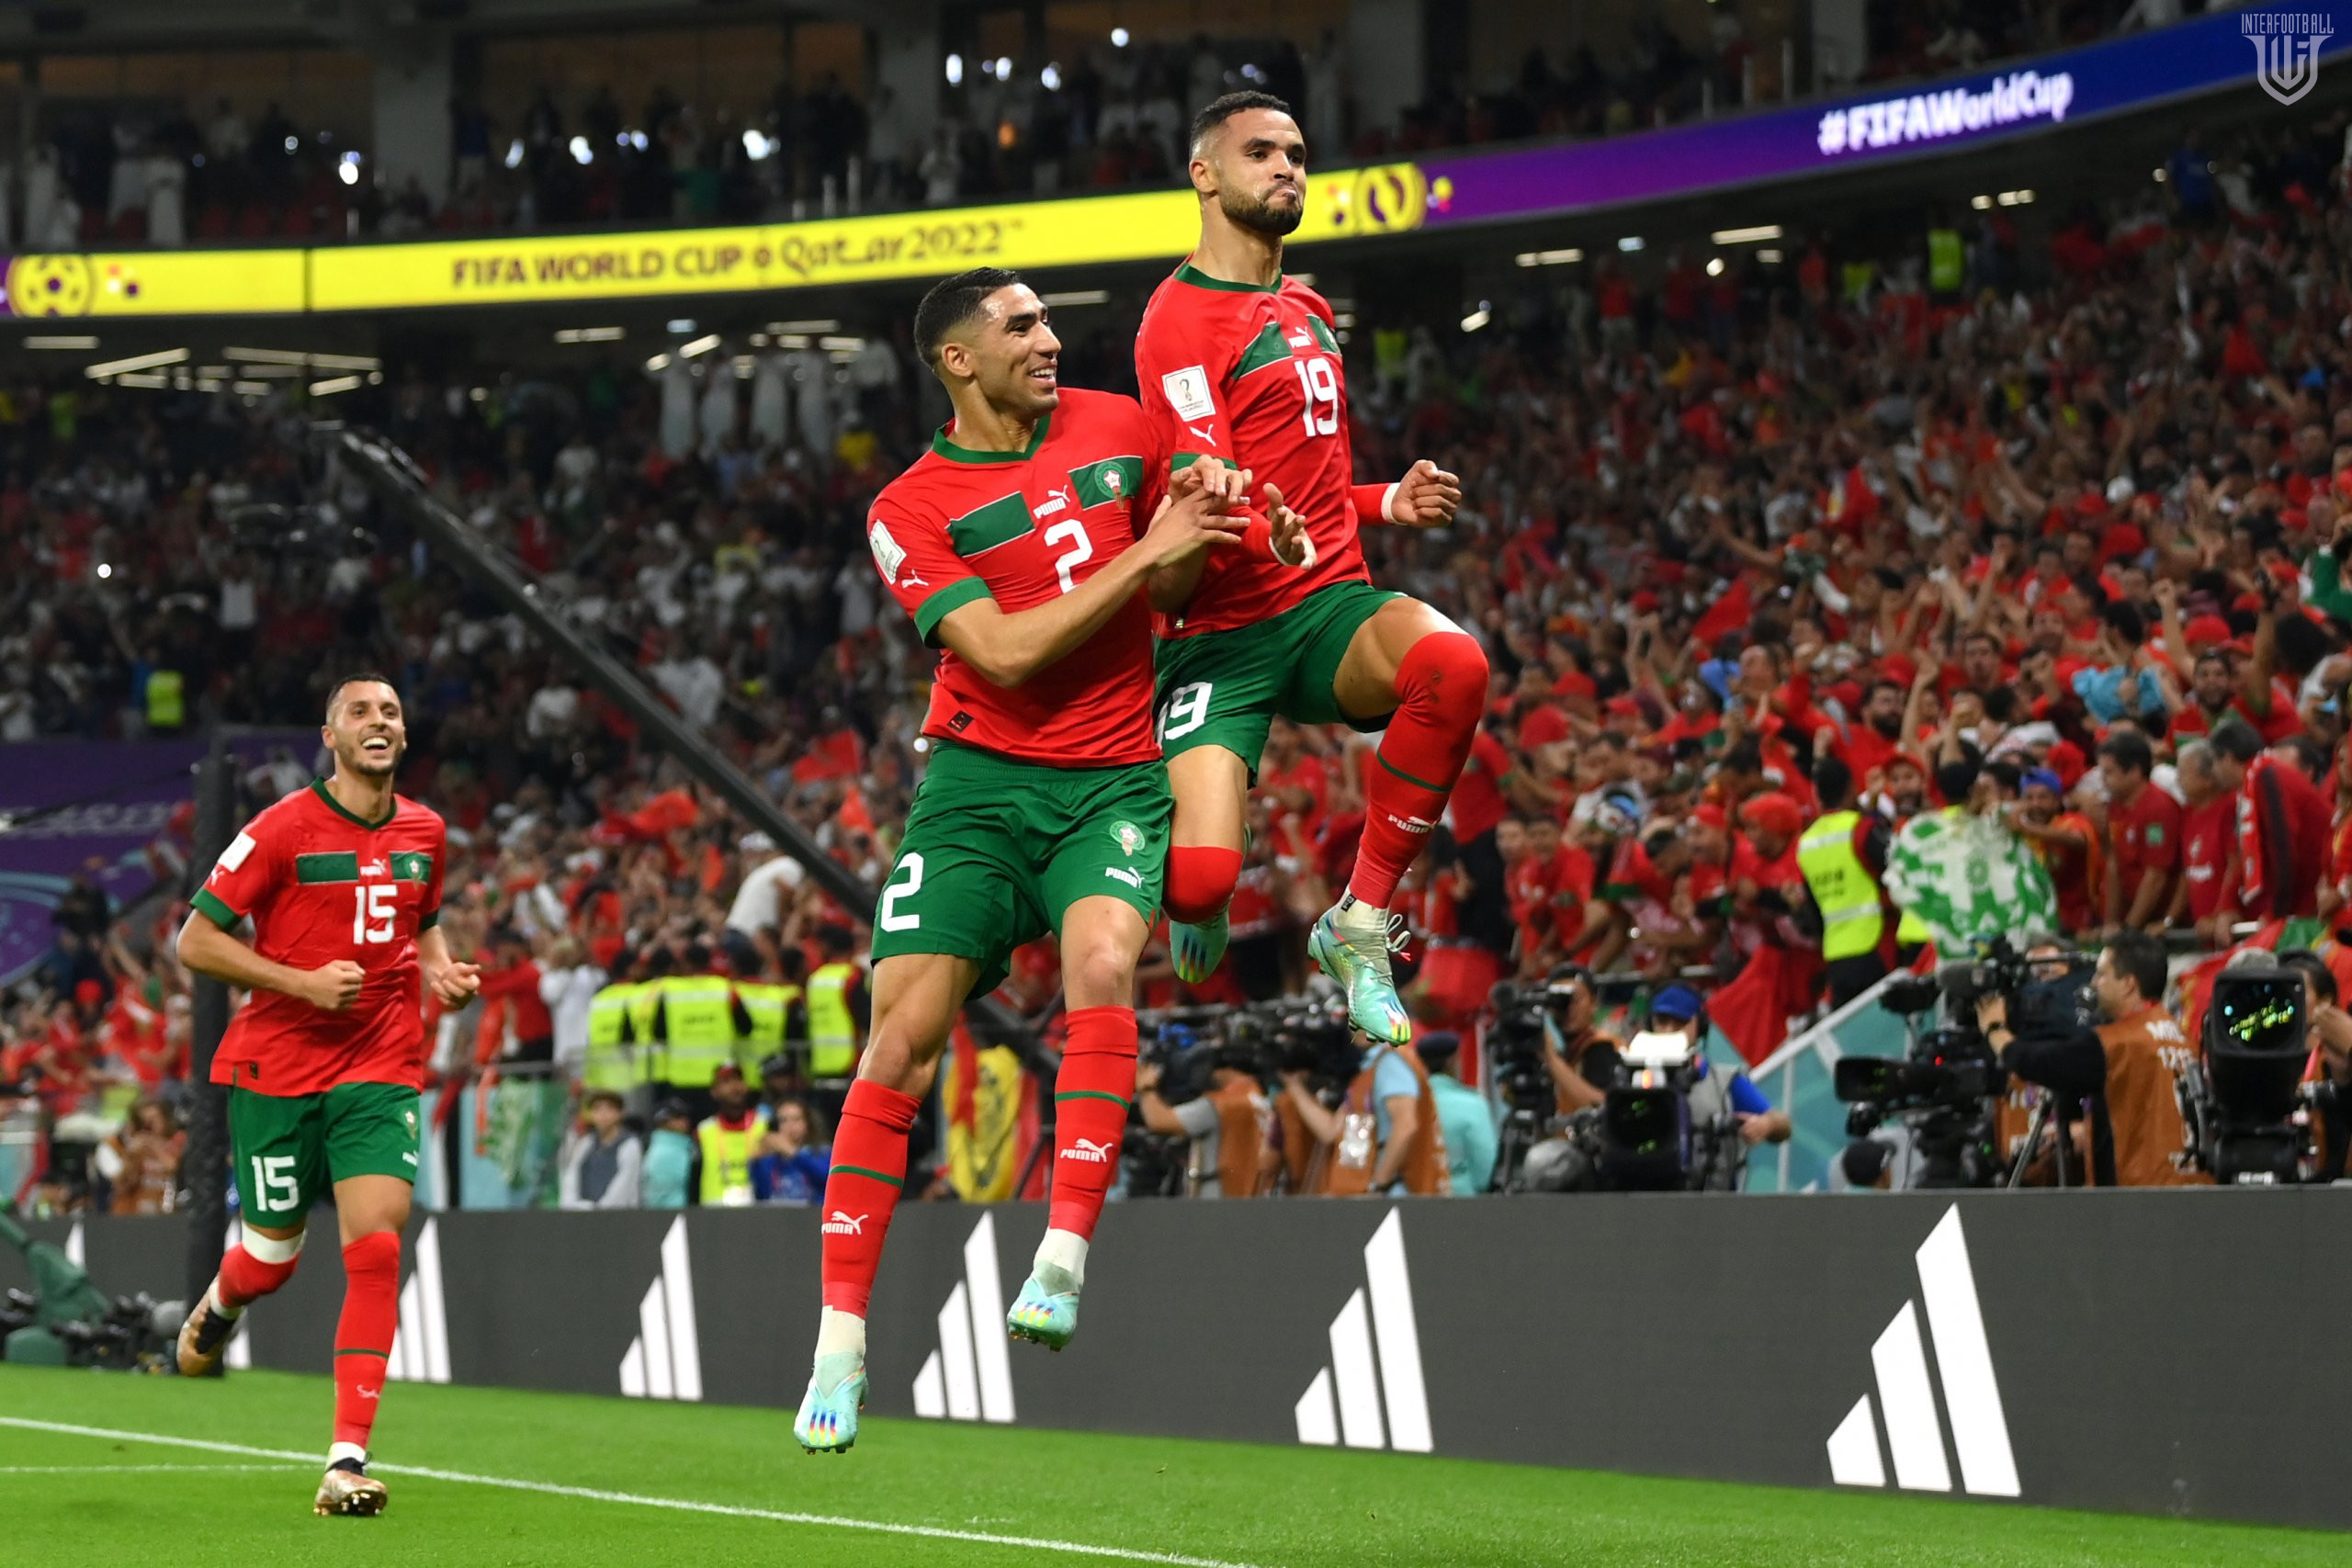 Մարոկկոոոո՜ո!!! Ռեգրագիի թիմը հաղթեց Պորտուգալիային` դուրս գալով ԱԱ-2022-ի կիսաեզրափակիչ